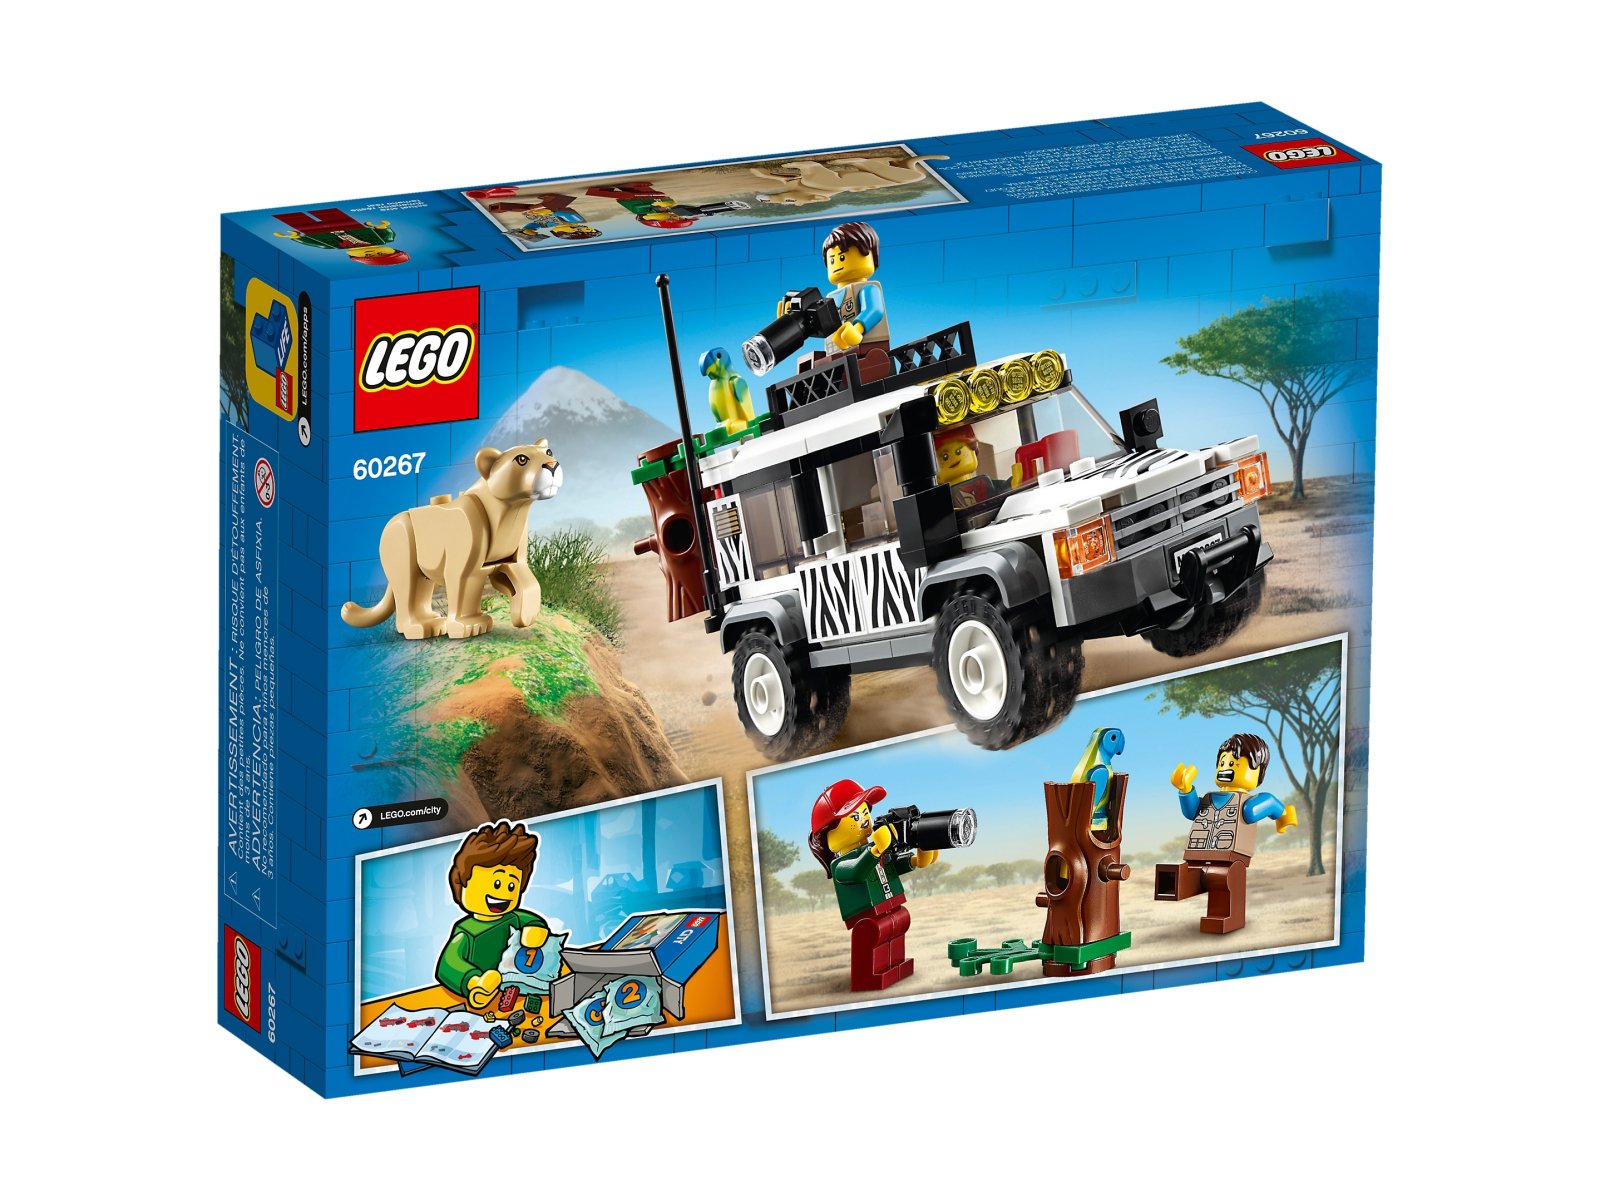 LEGO City 60267 Terenówka na safari